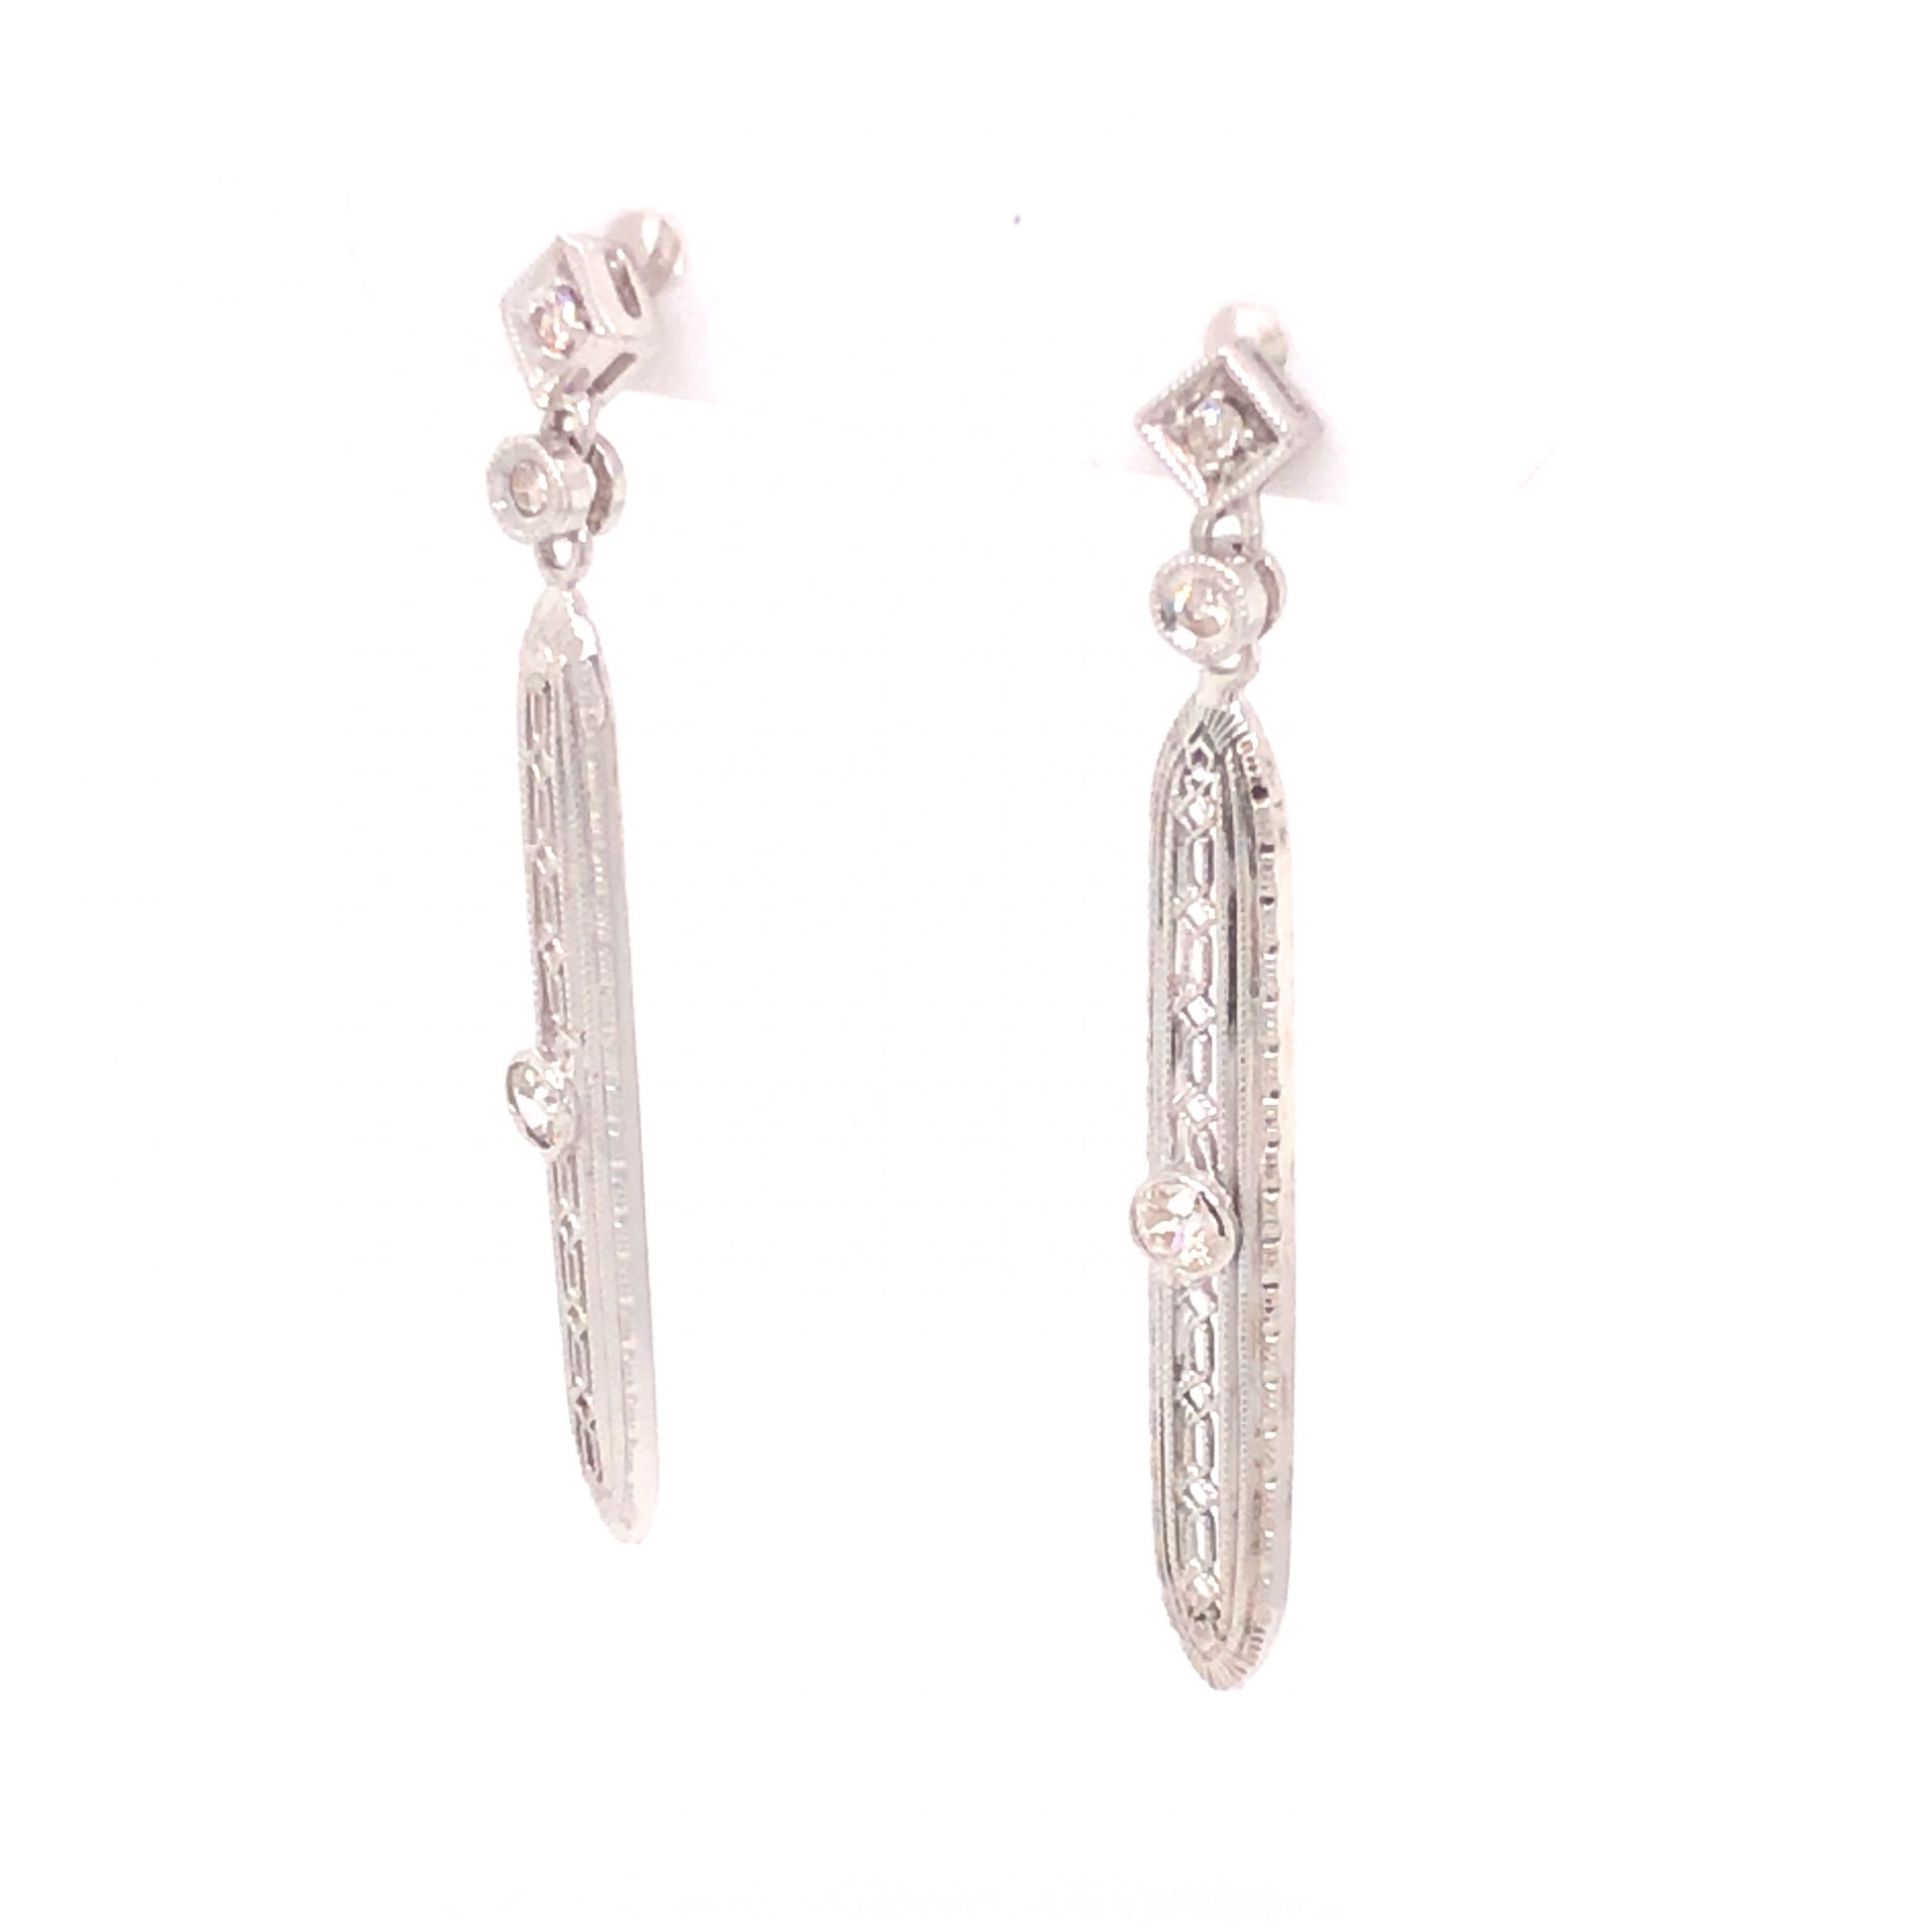 .26 Art Deco Diamond Earrings in 18k White Gold